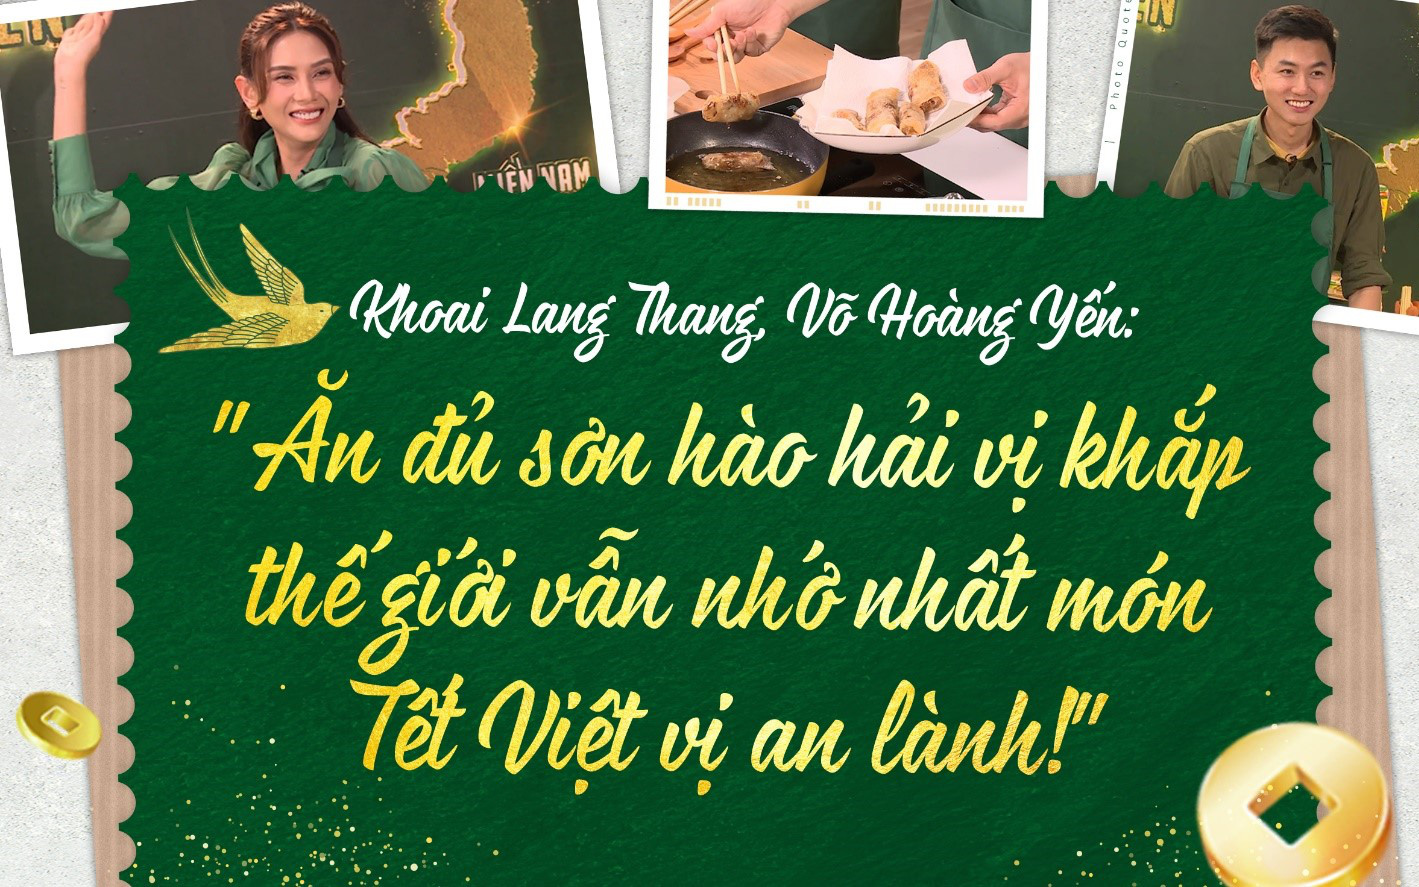 Khoai Lang Thang, Võ Hoàng Yến: &quot;Ăn đủ sơn hào hải vị khắp thế giới vẫn nhớ nhất món Tết Việt vị an lành!&quot;